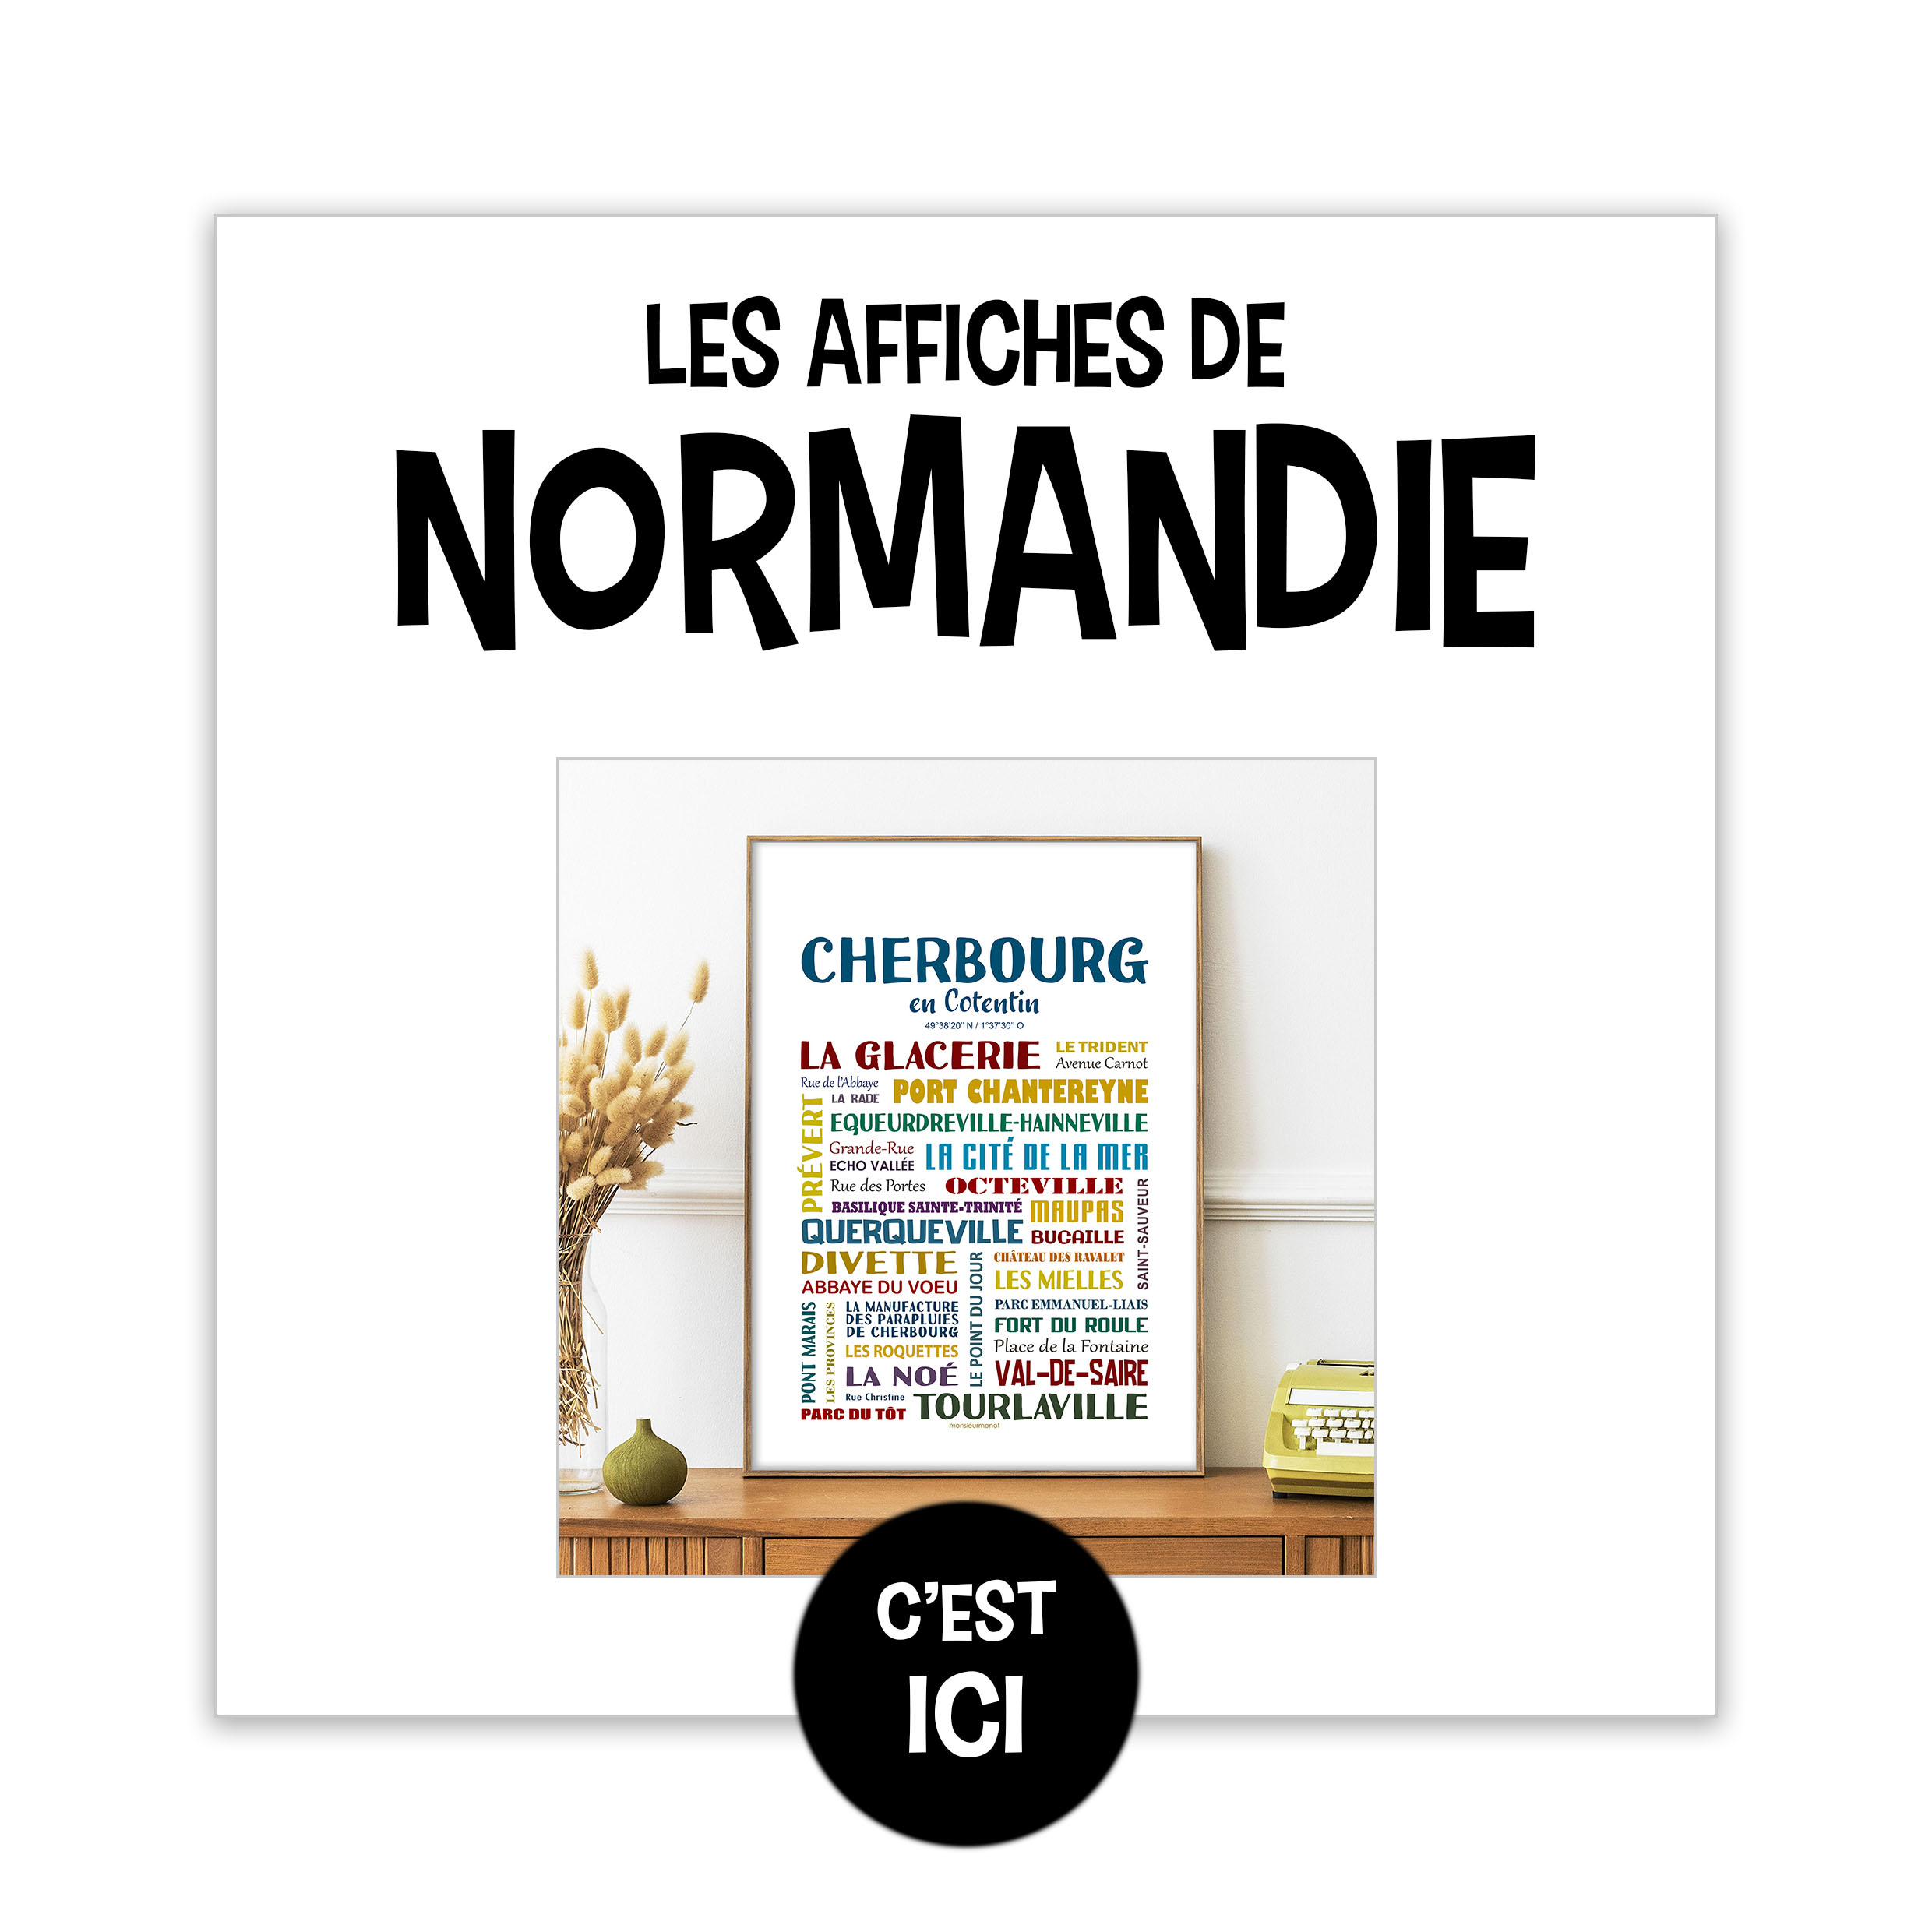 Les affiches de Normandie